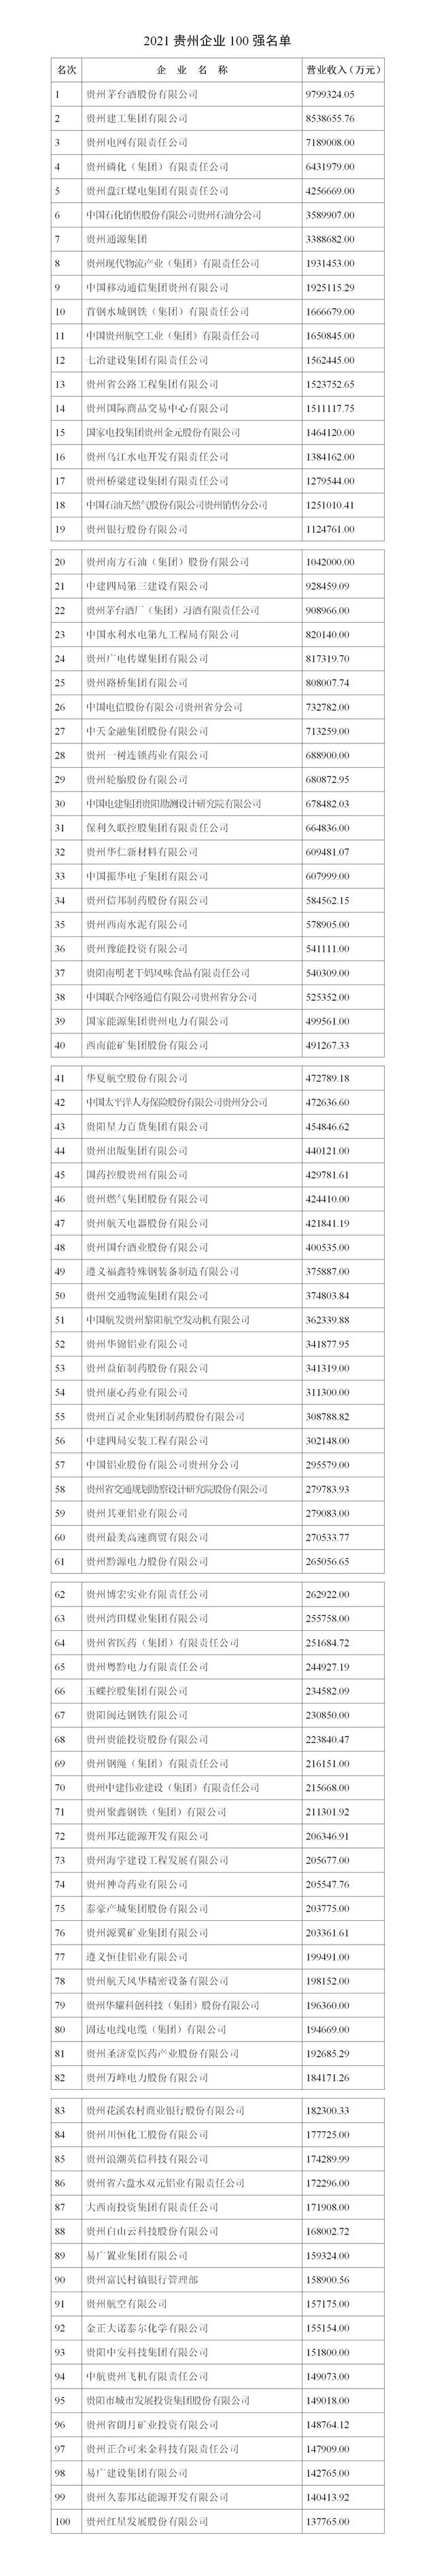 2021贵州企业100强榜单（附完整榜单）— 贵州企业网站制作